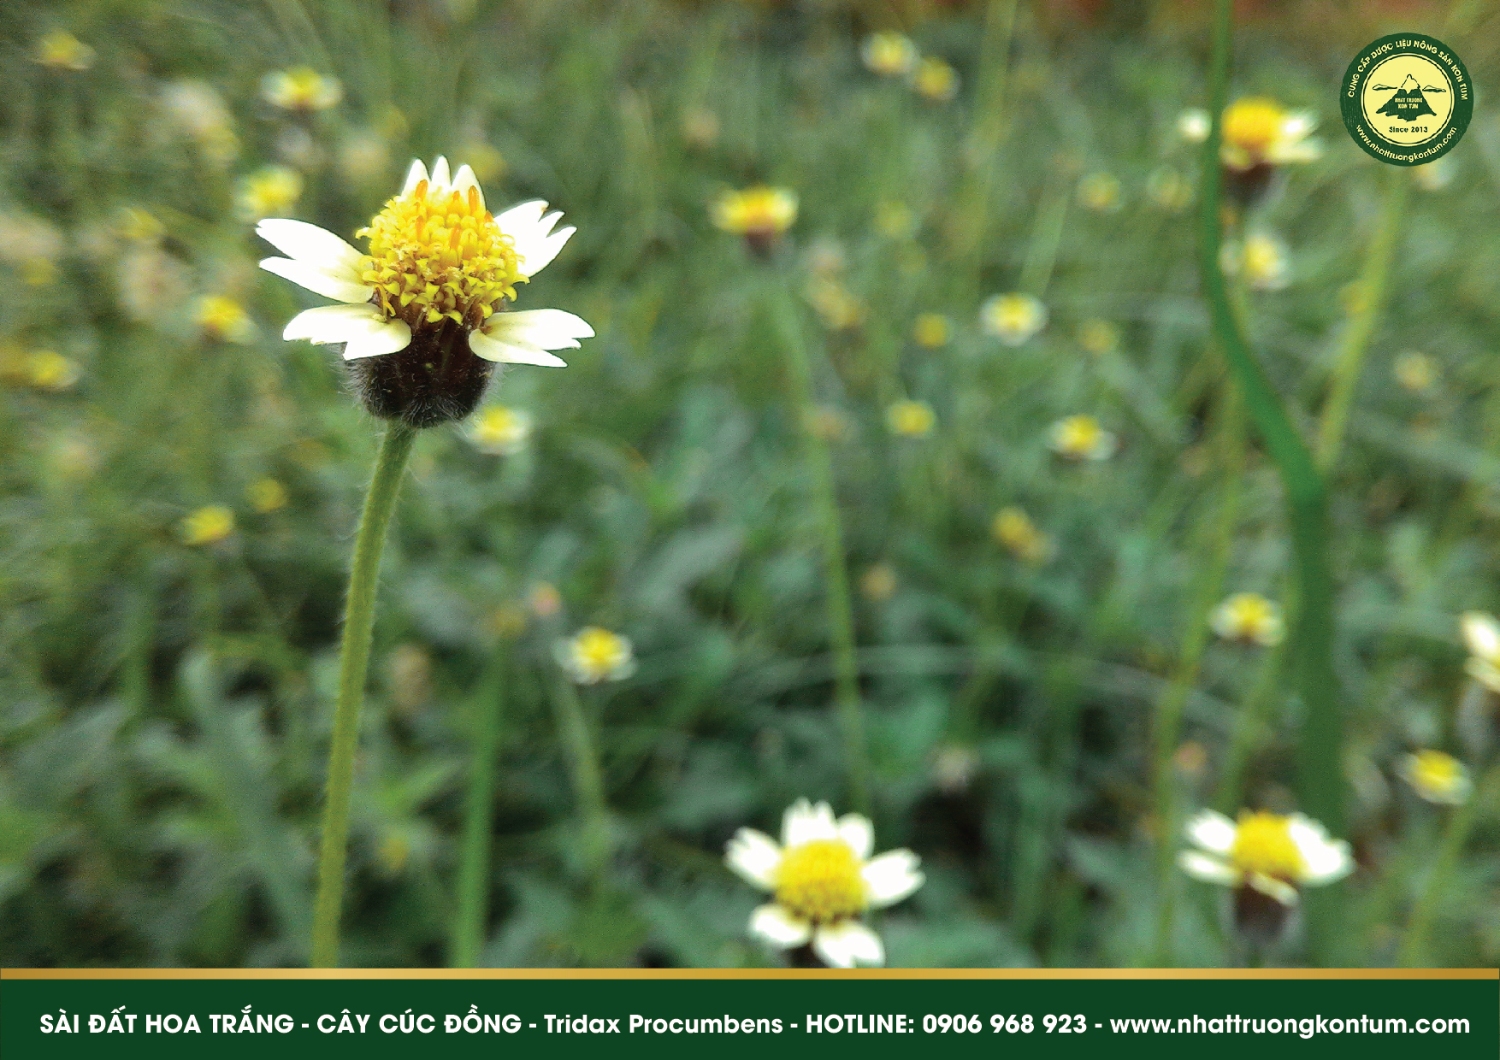 Sài đất hoa trắng - Tridax Procumbens loài thảo dược được đề cập trong Y Học Ayurvedic